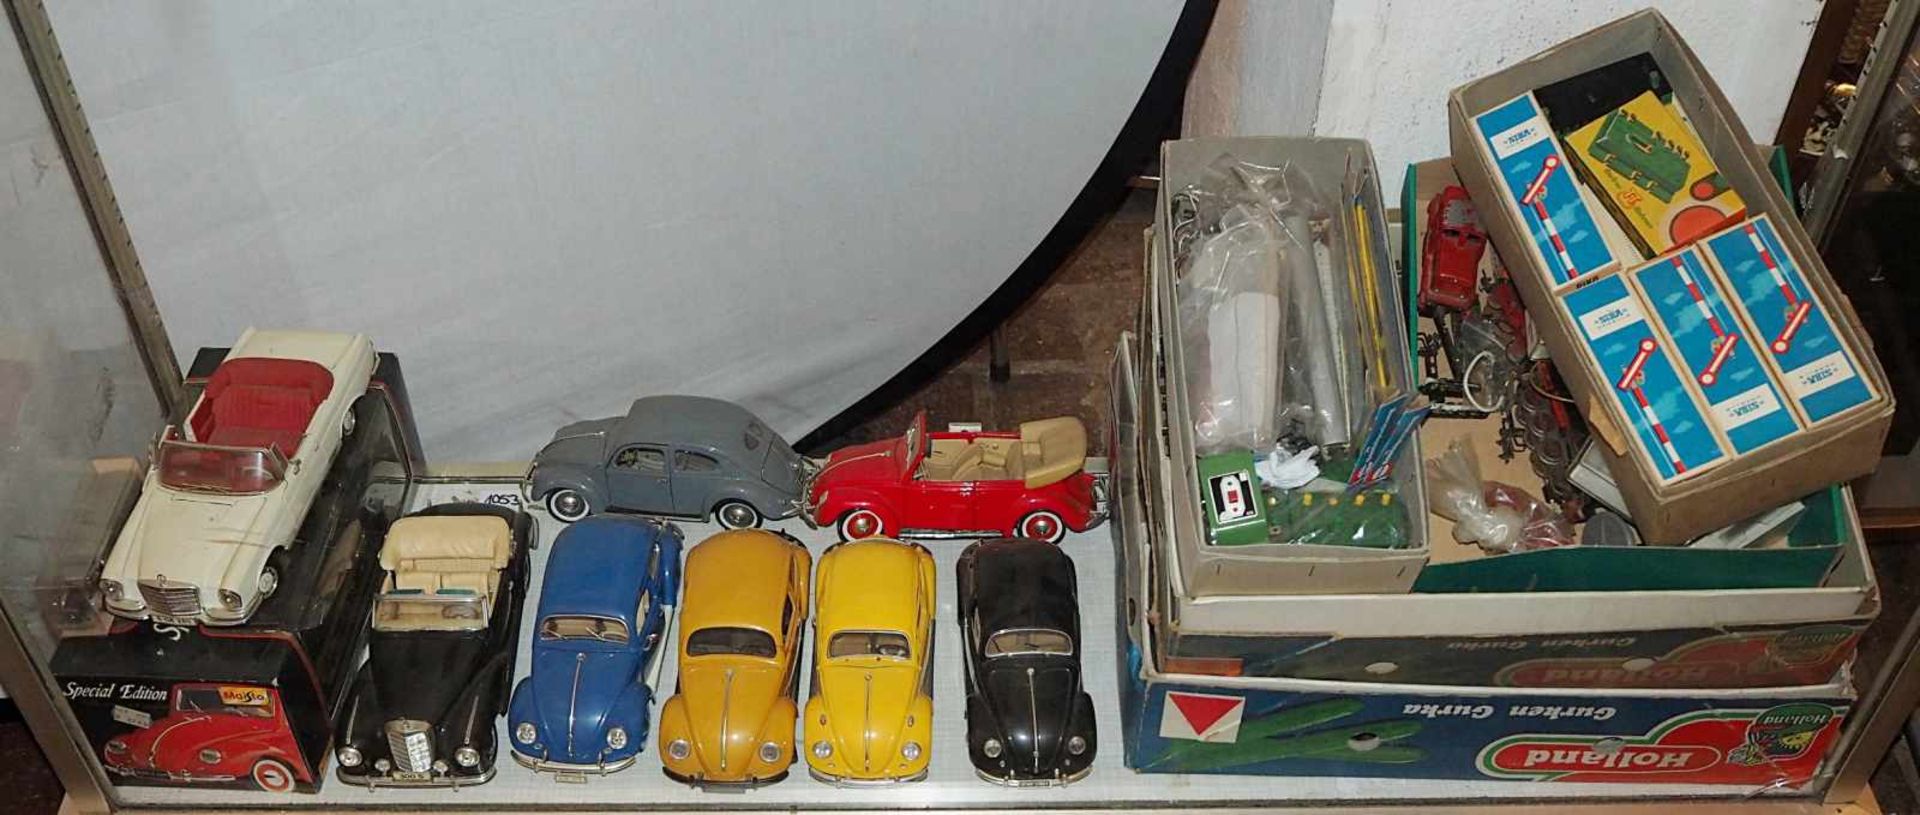 1 Konvolut Spielzeug versch. STEIFF, HERMANN u.a.z.B. Stofftiere, Modellautos, - Bild 2 aus 2